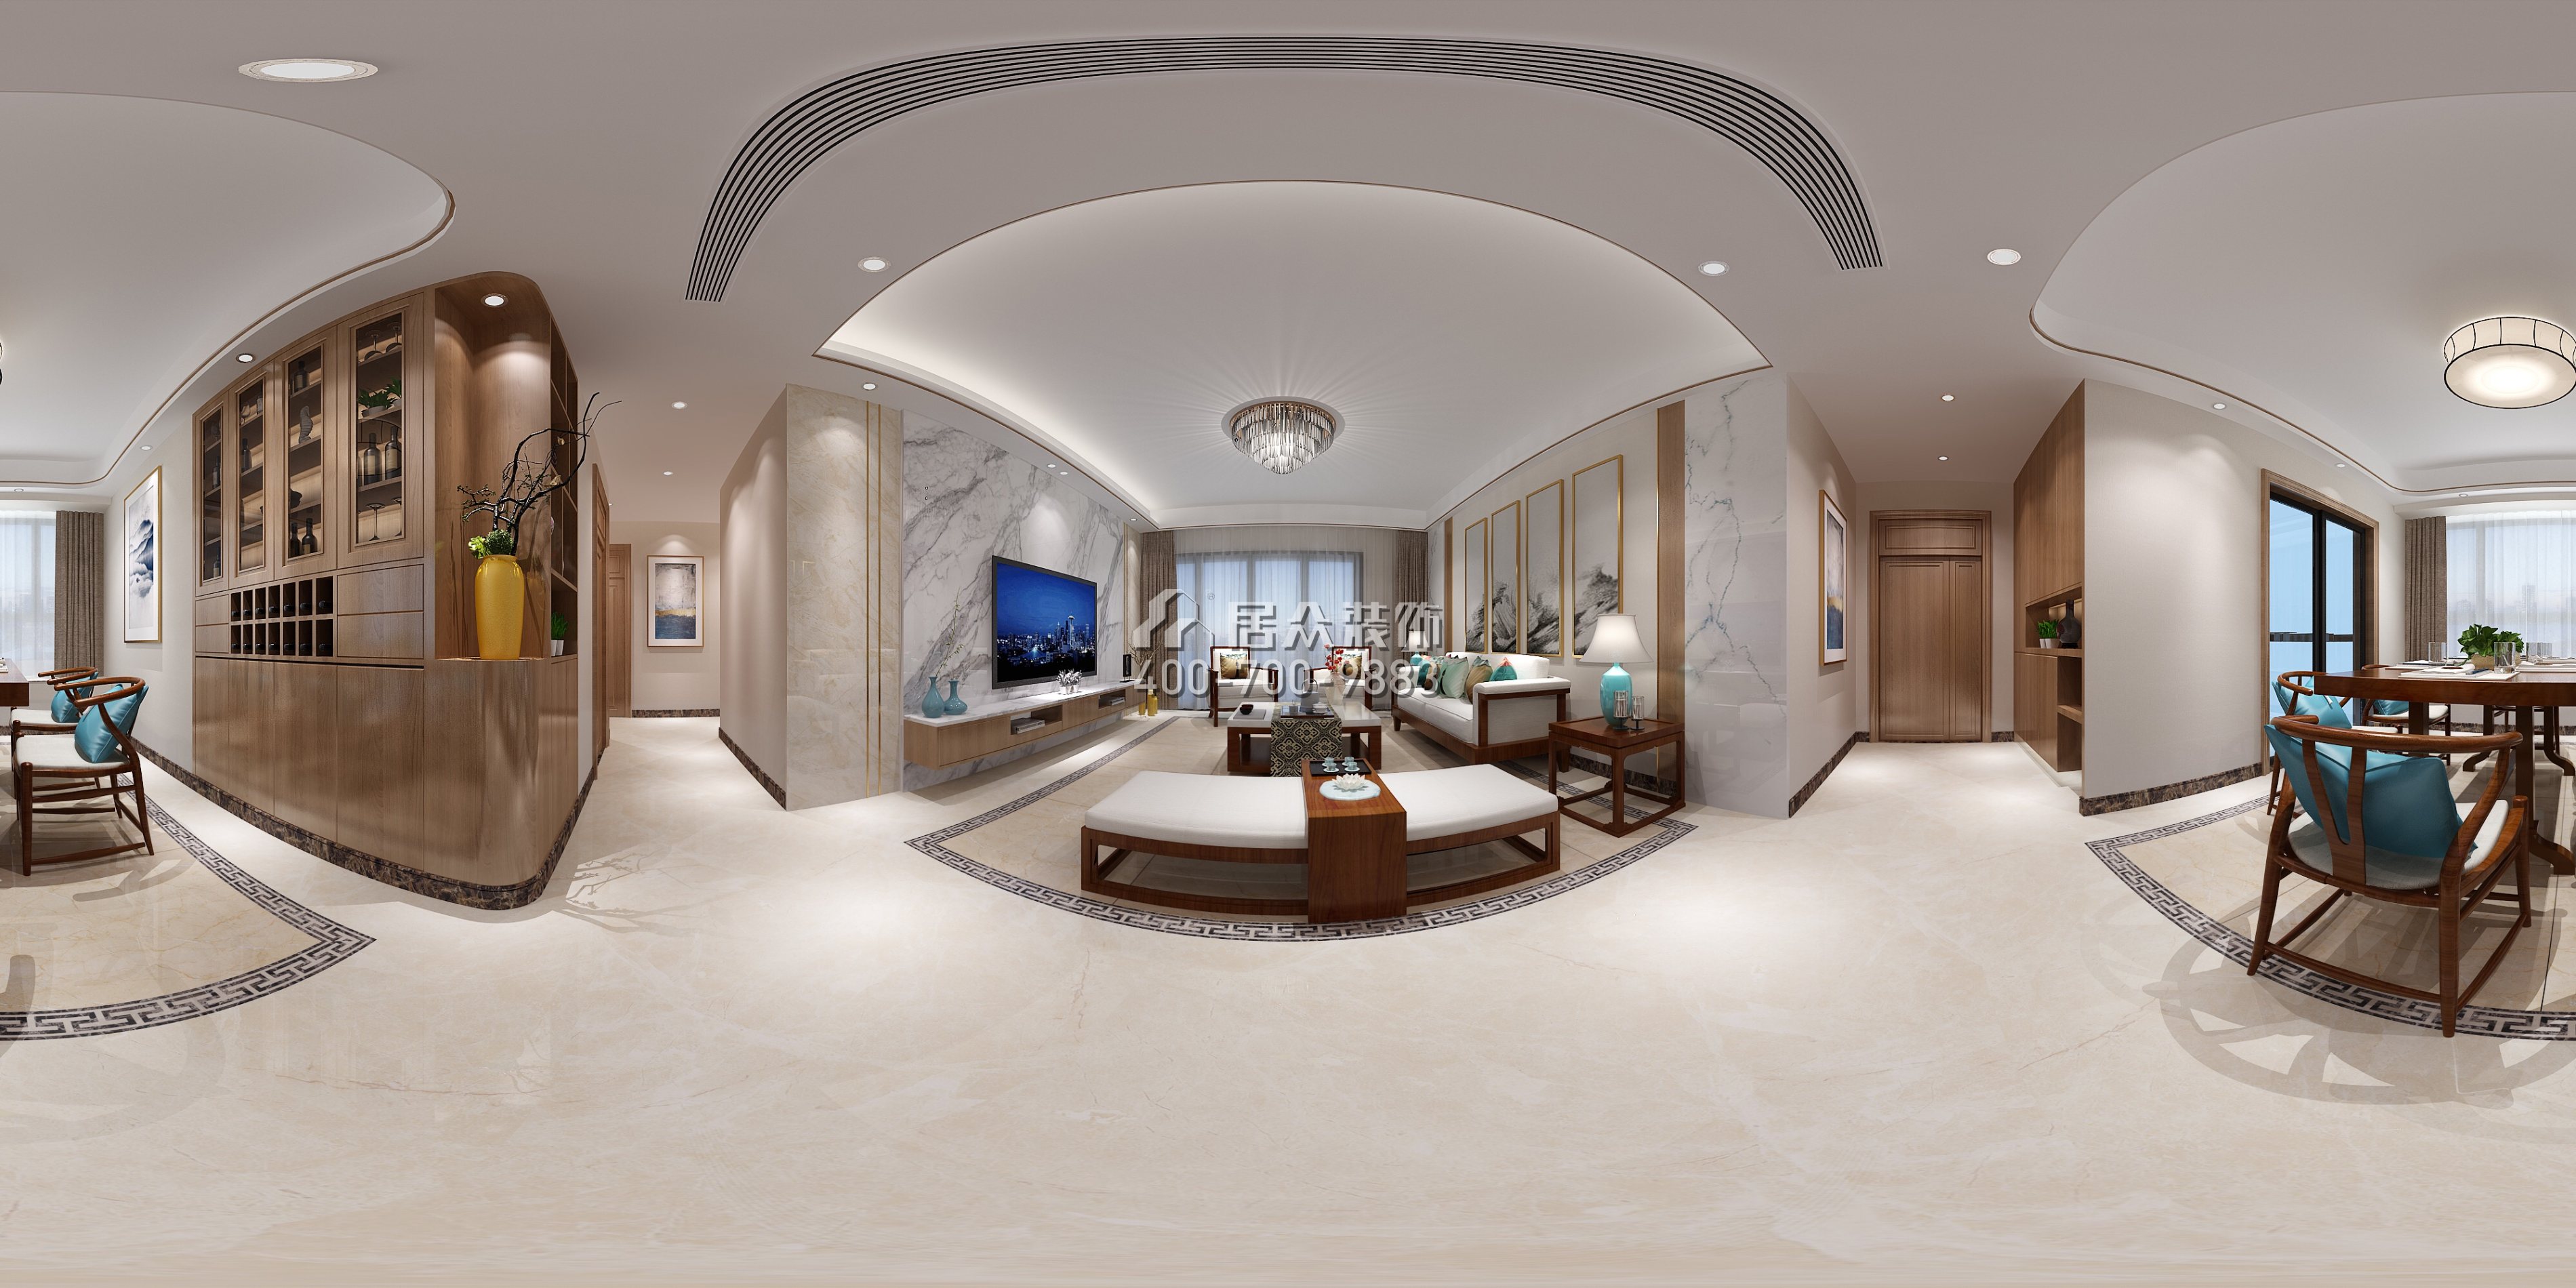 廣州華發四季144平方米中式風格平層戶型客廳裝修效果圖